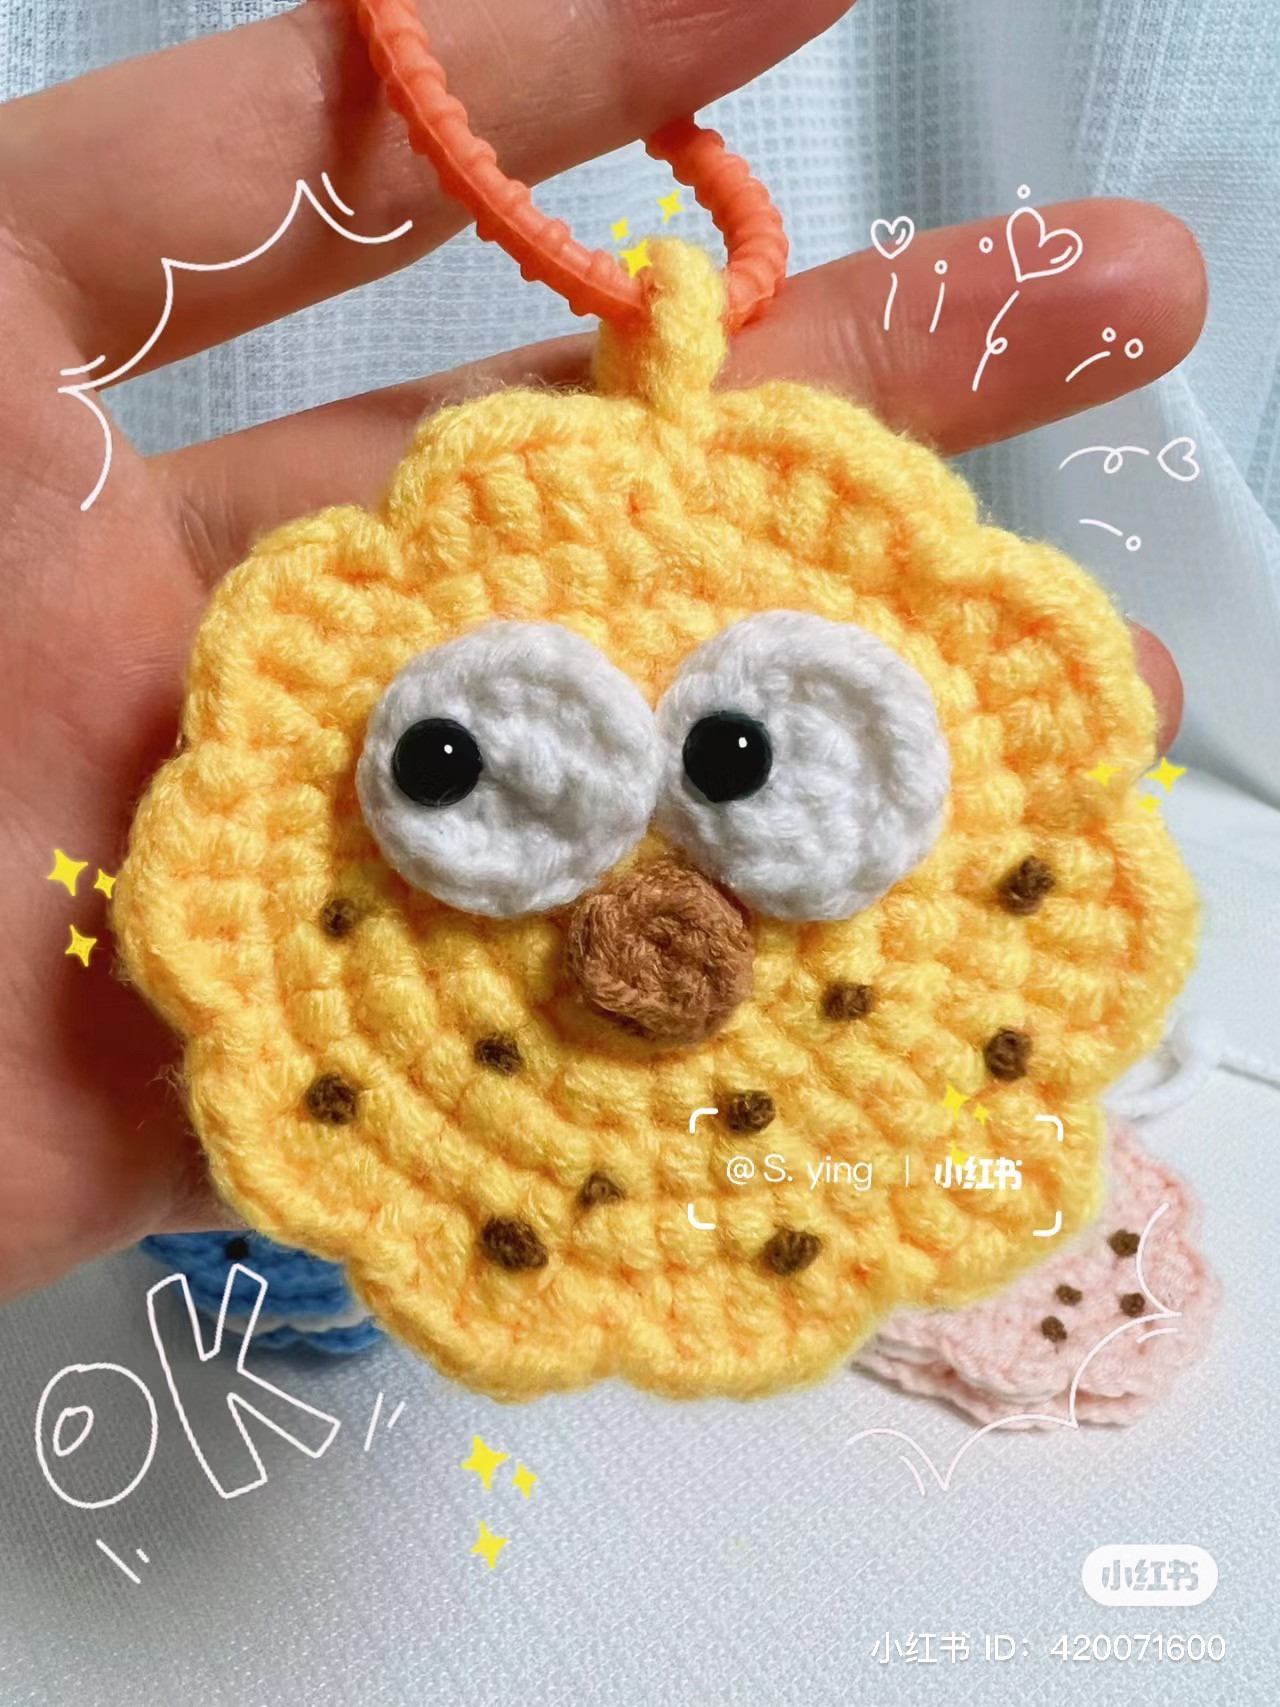 Sandwich cookie pendant crochet pattern